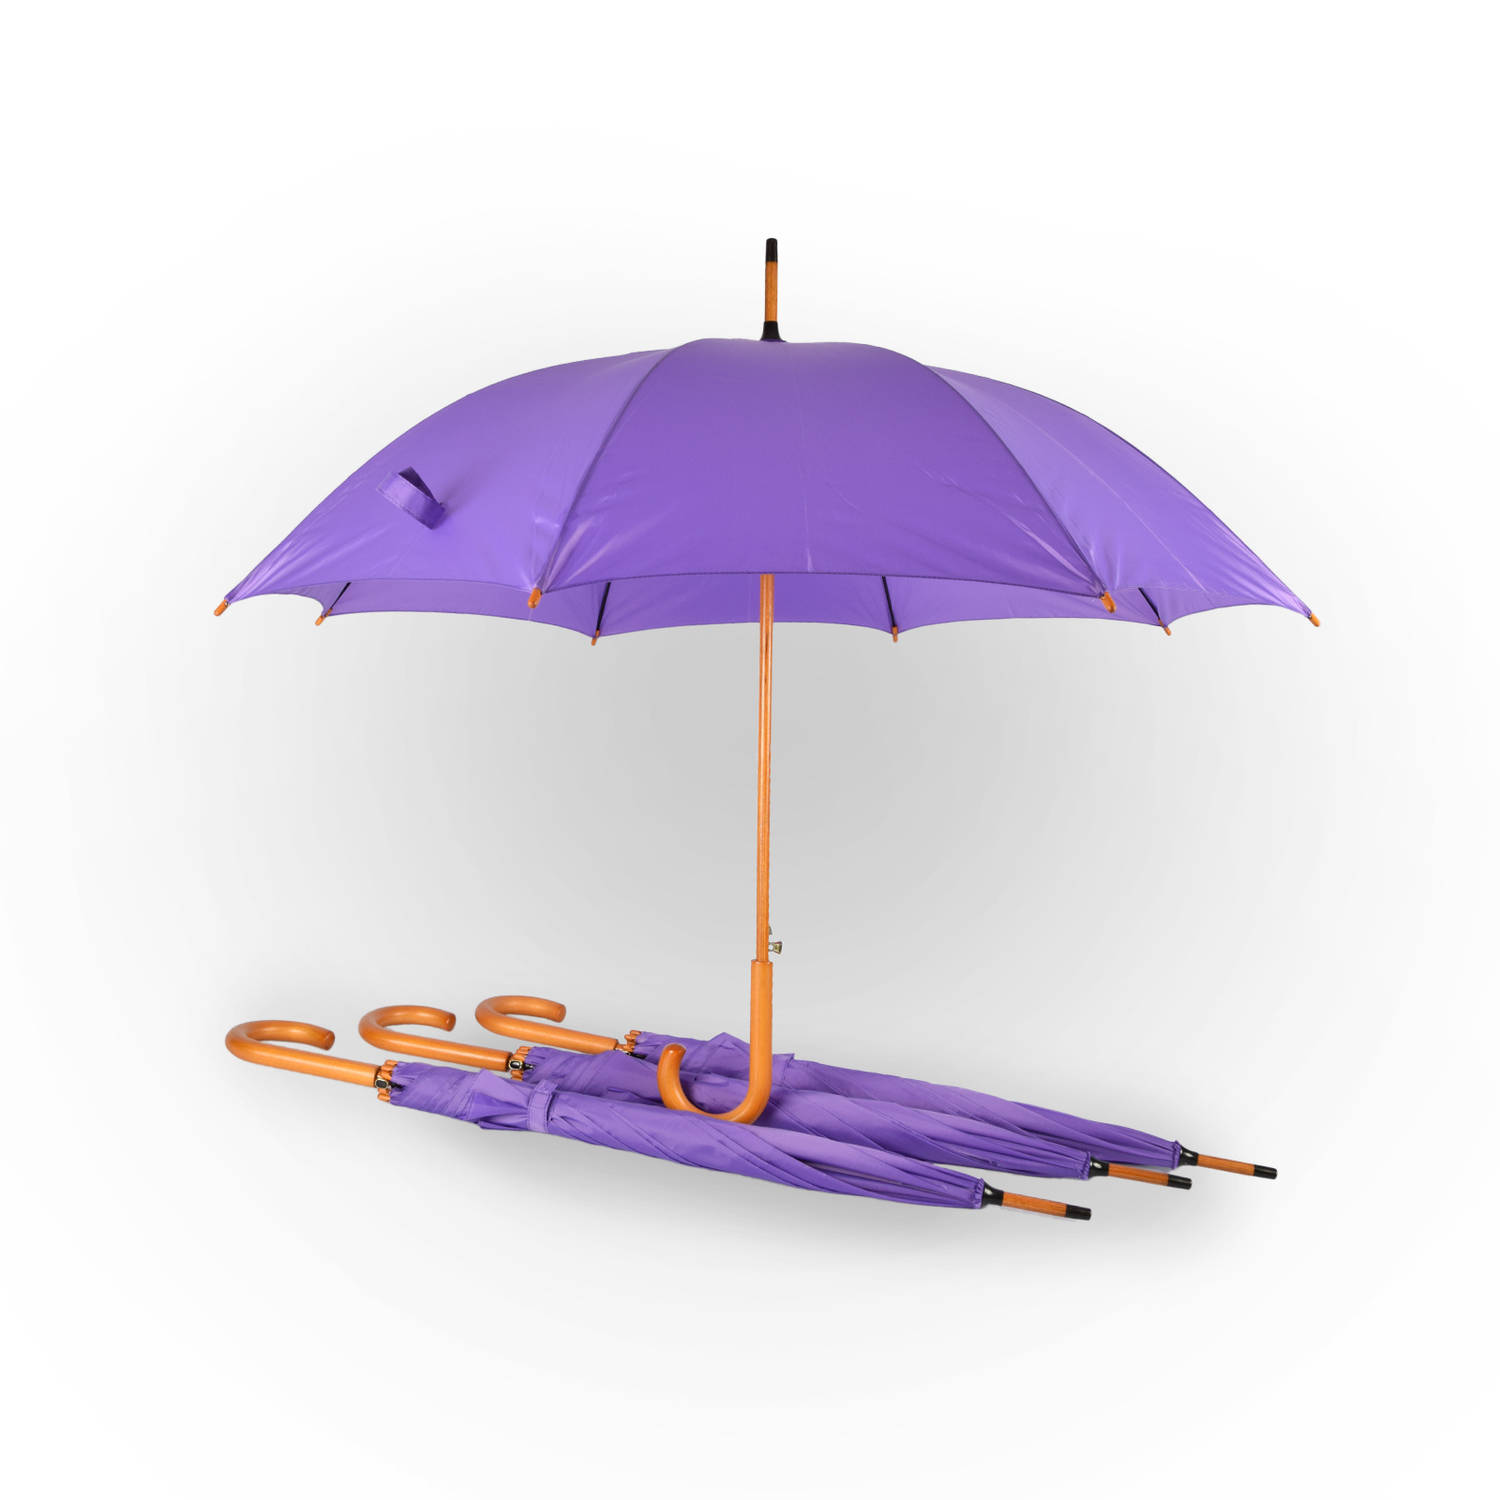 4x Paraplu Automatische paraplu paars Opvouwbare paraplu Houten handvat 89cm*98cm